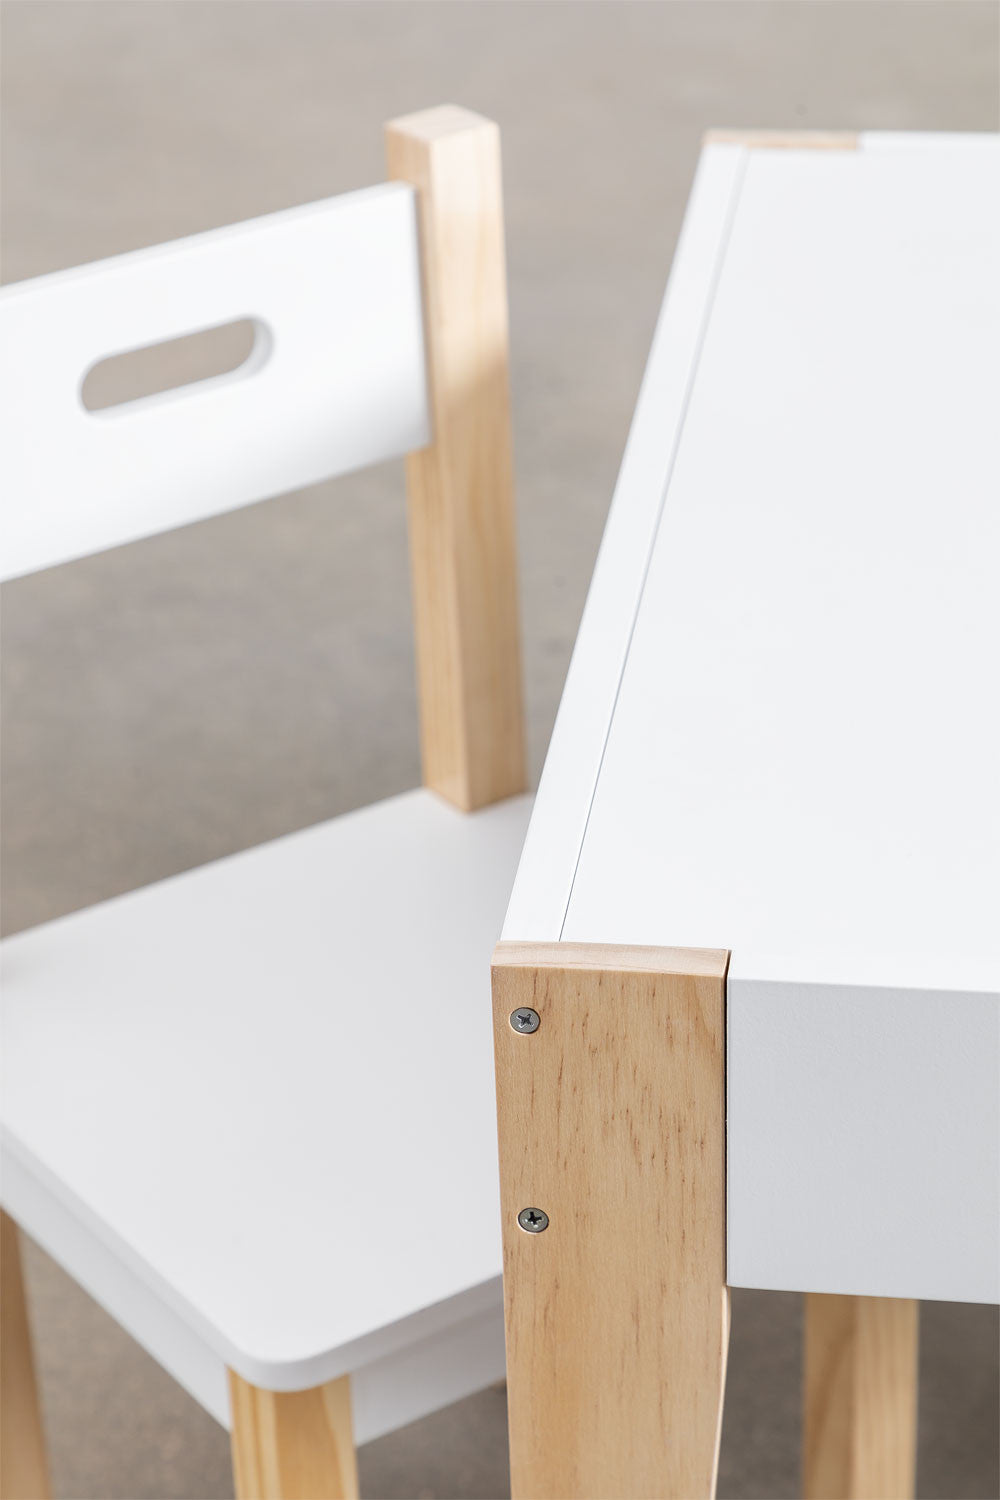 Ensemble avec une table ardoise et 2 chaises en bois Belfy Kids - Tables par Sklum